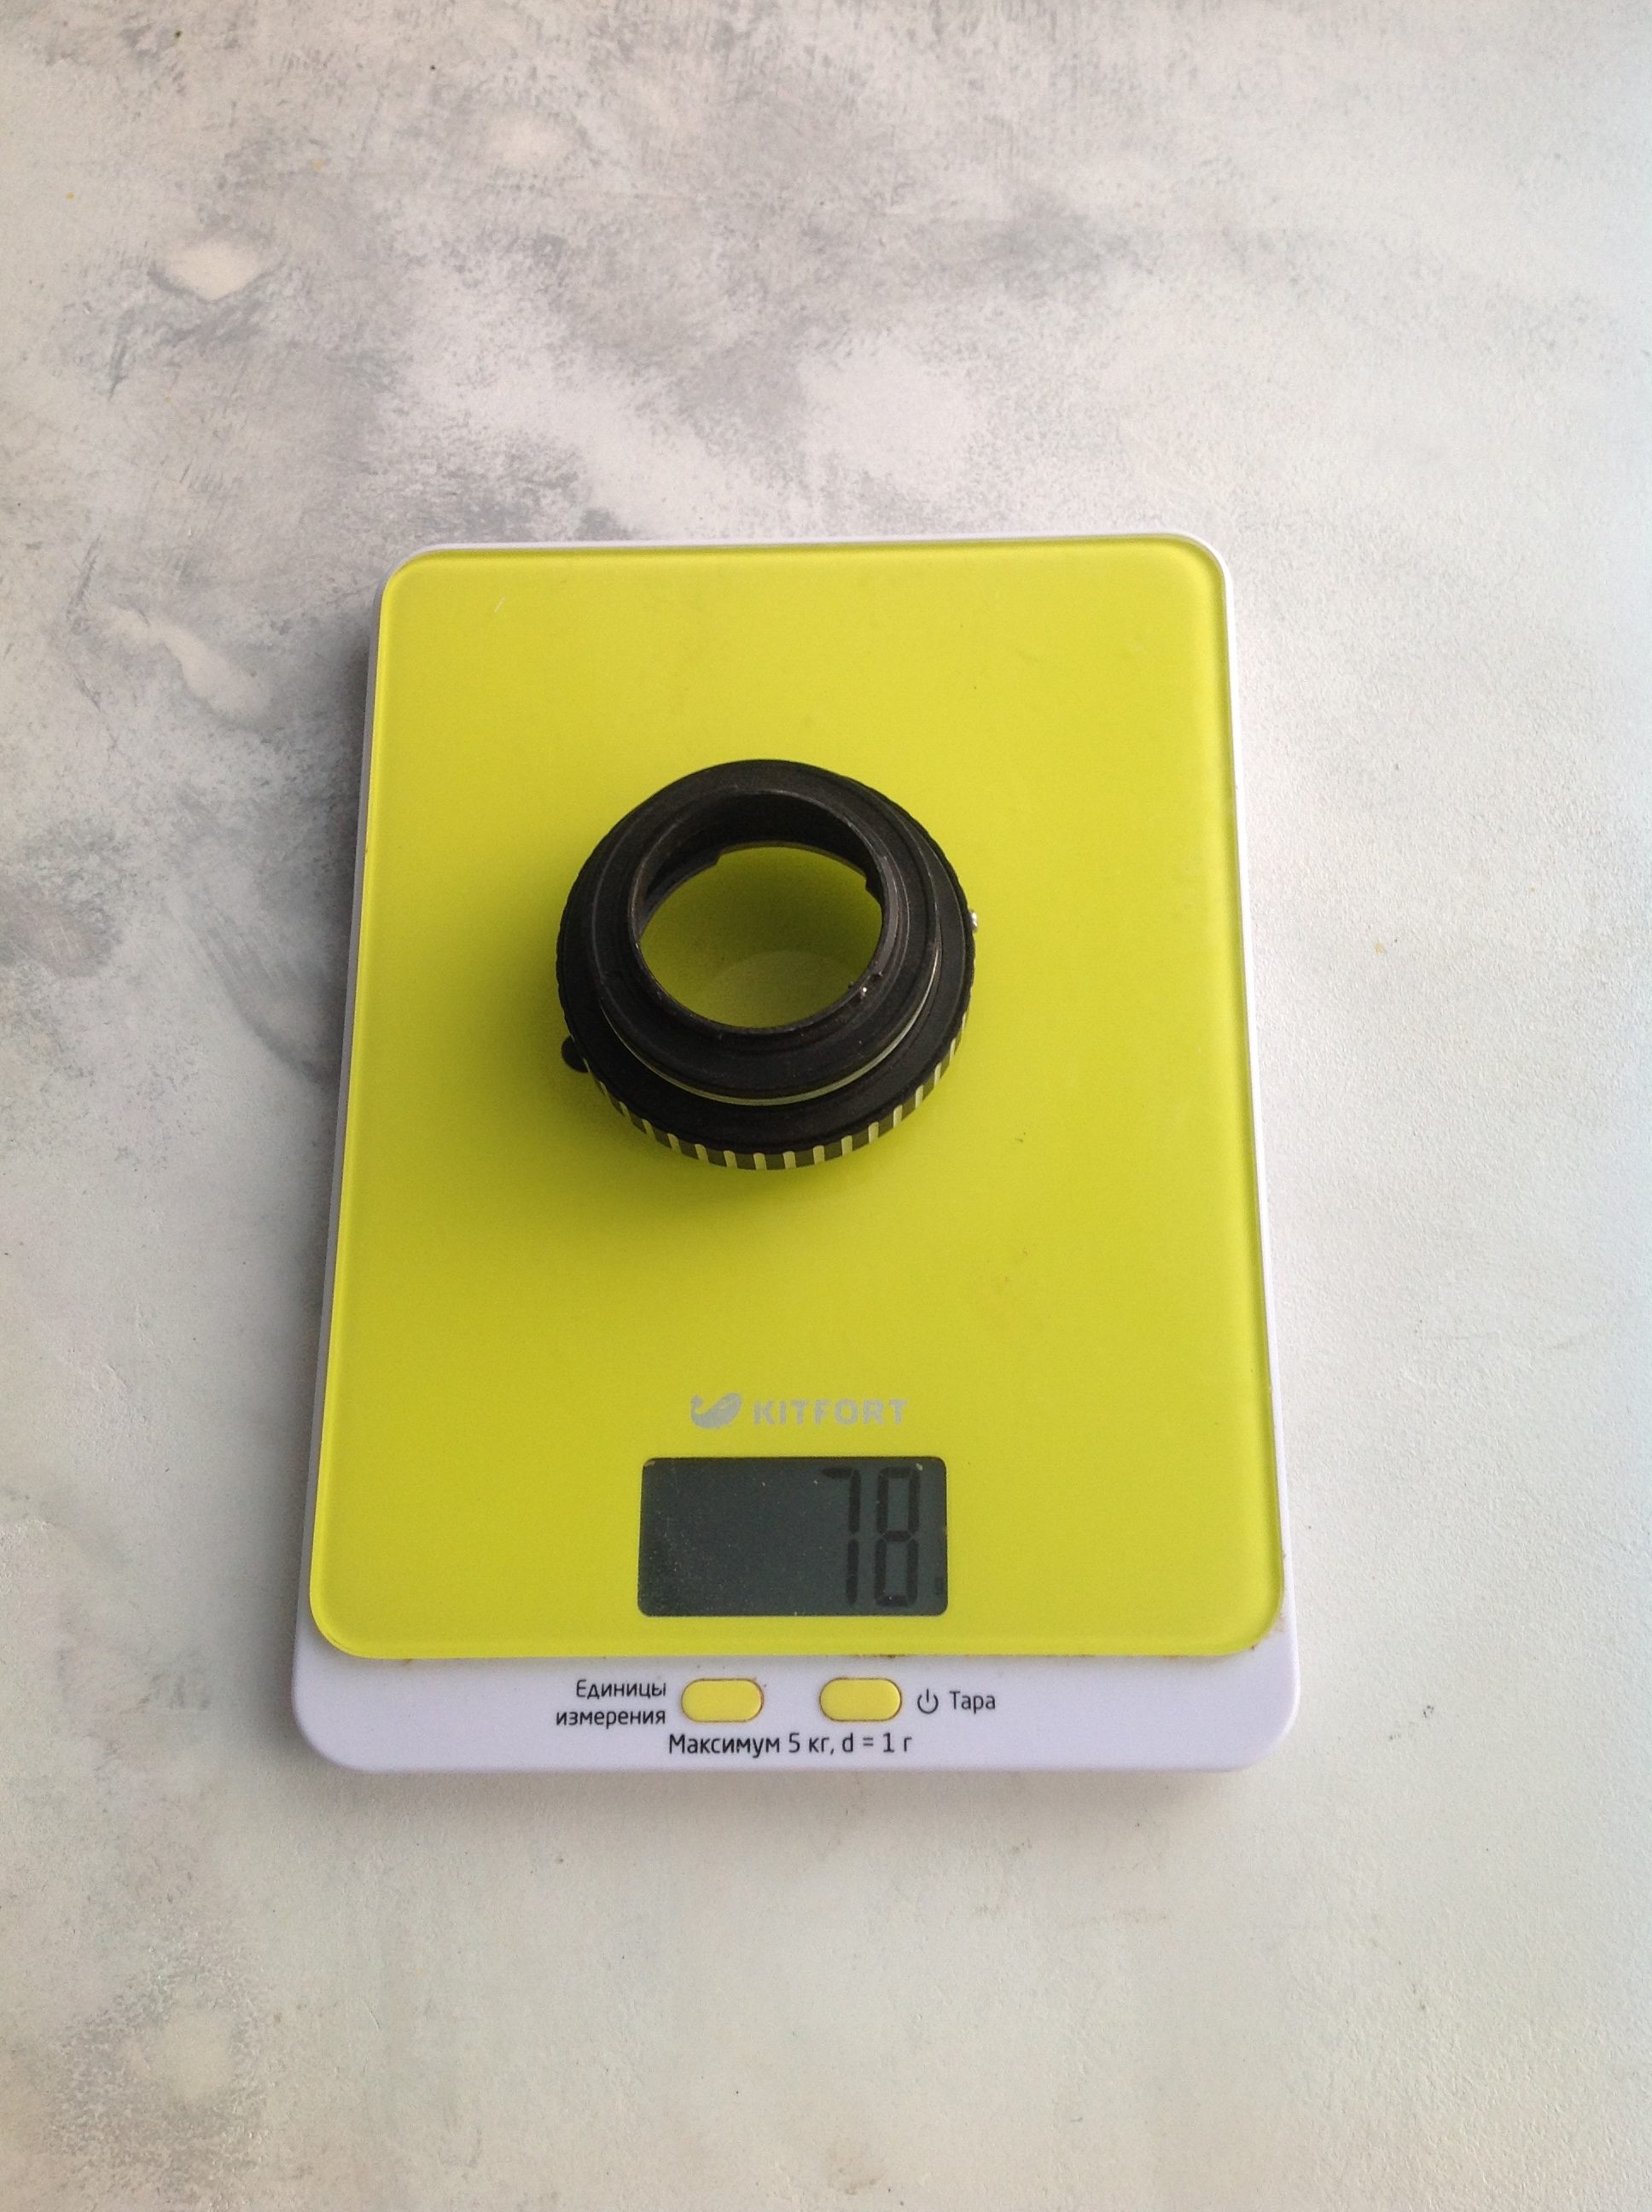 Gewicht des Adapterrings für fotografische Objektive